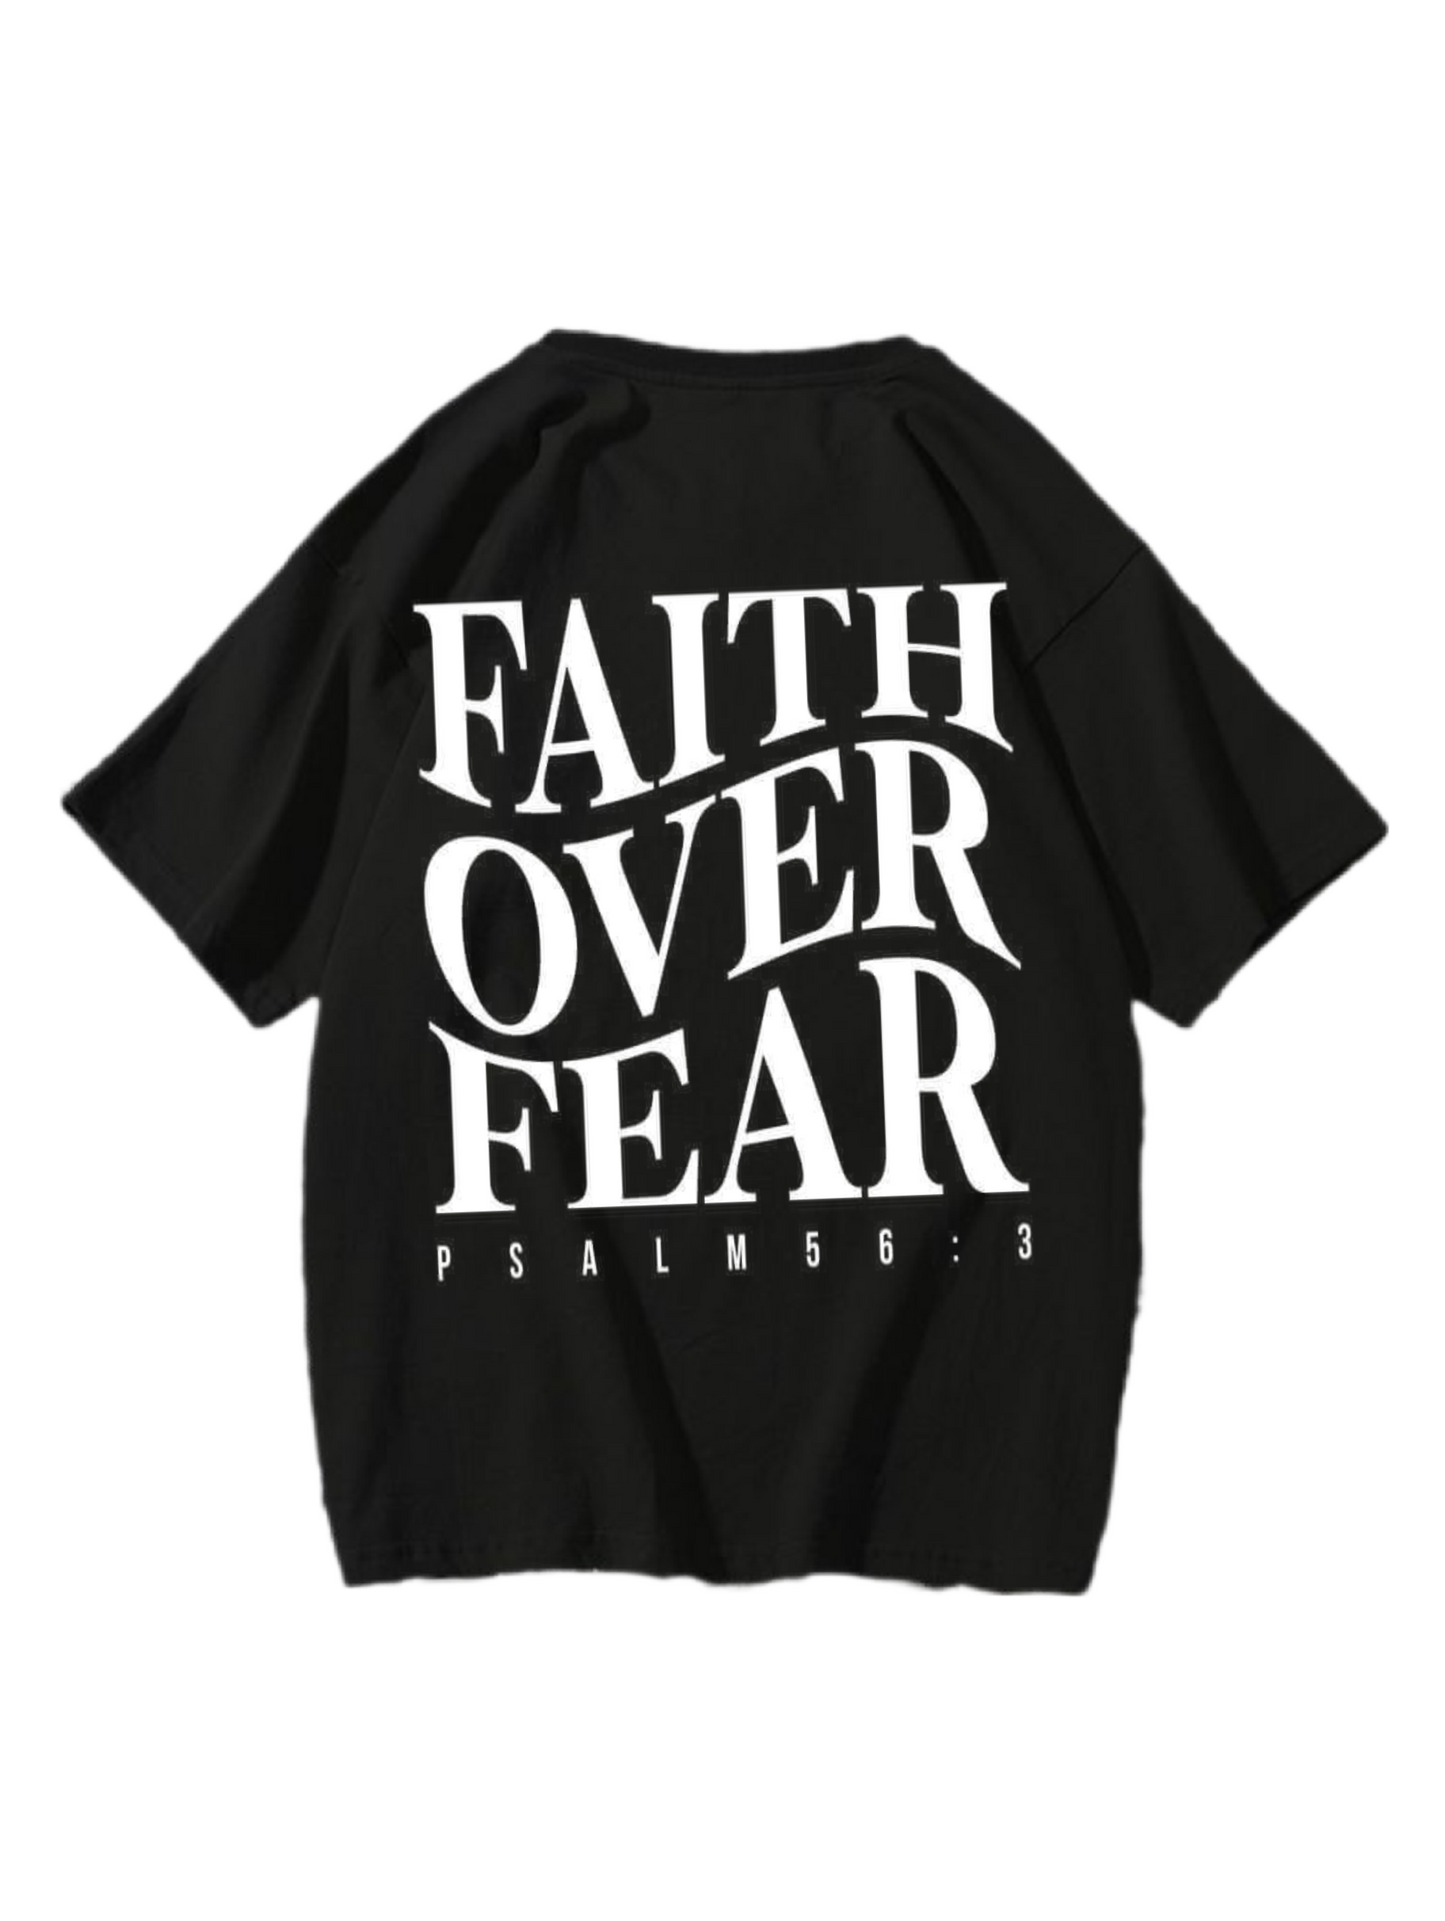 “Faith over fear 2” tee